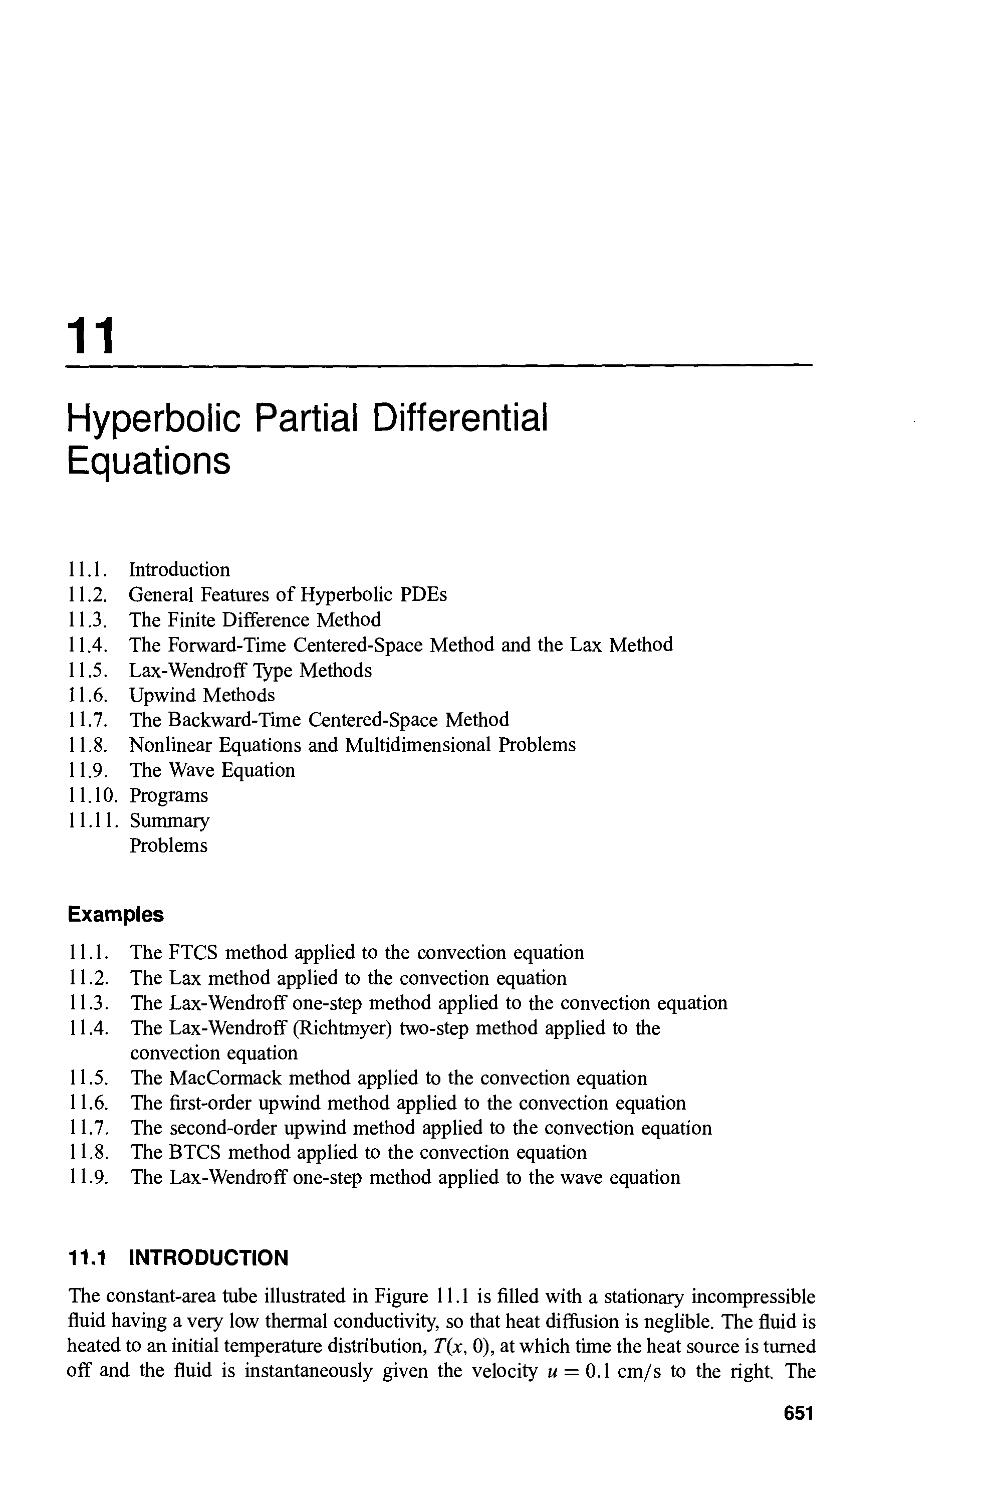 Hyperbolic PDE's